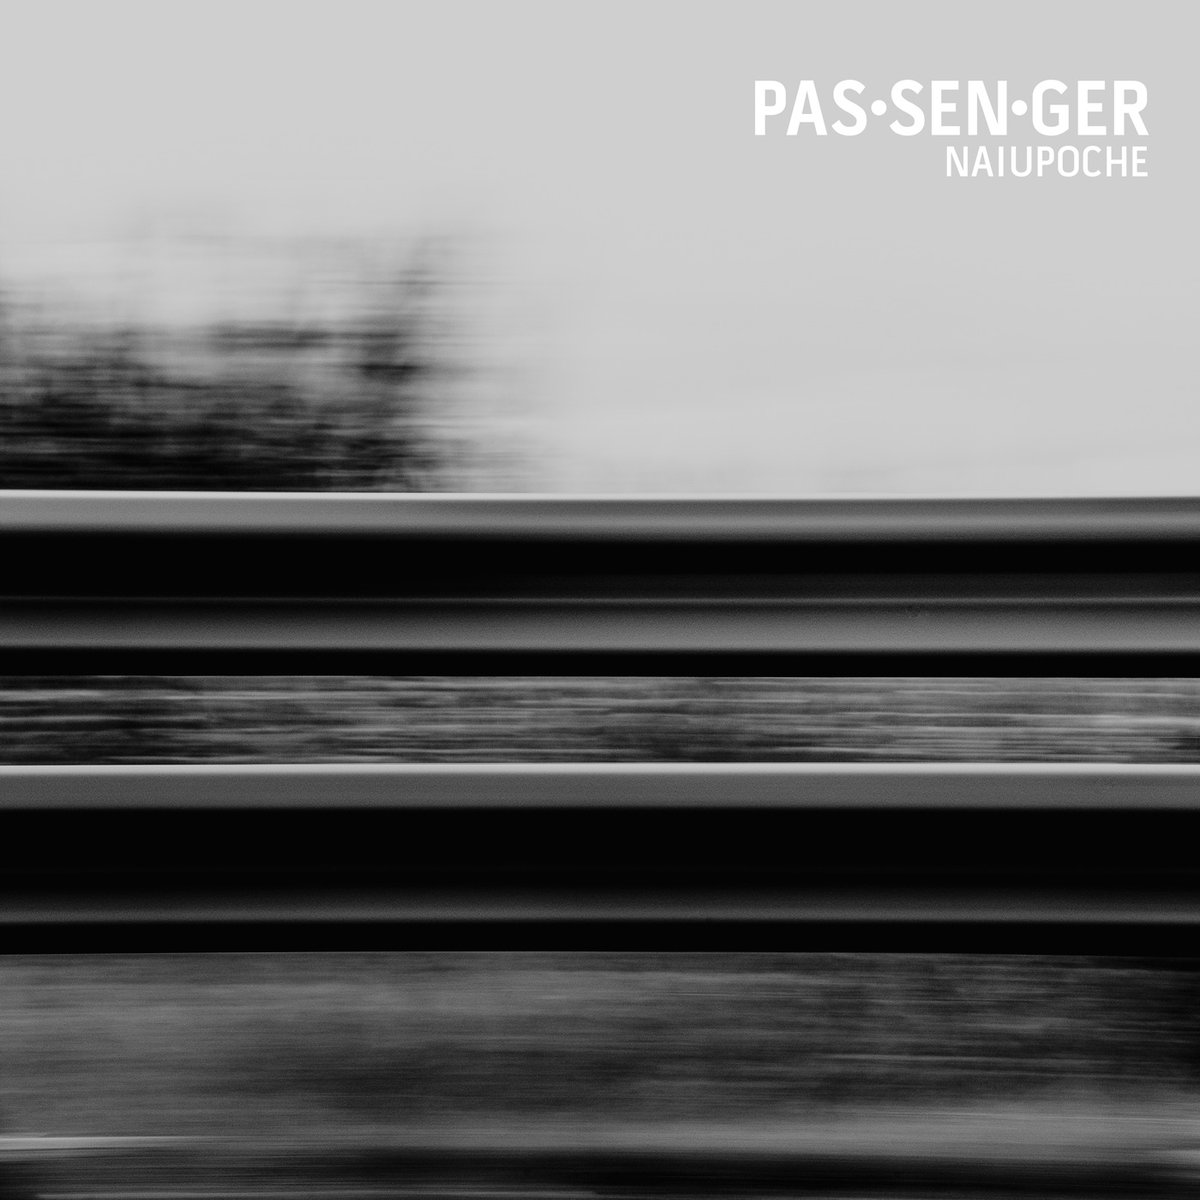 Naiupoche -`` Venerdì santo, Vol. 1: Passenger`` - album cover